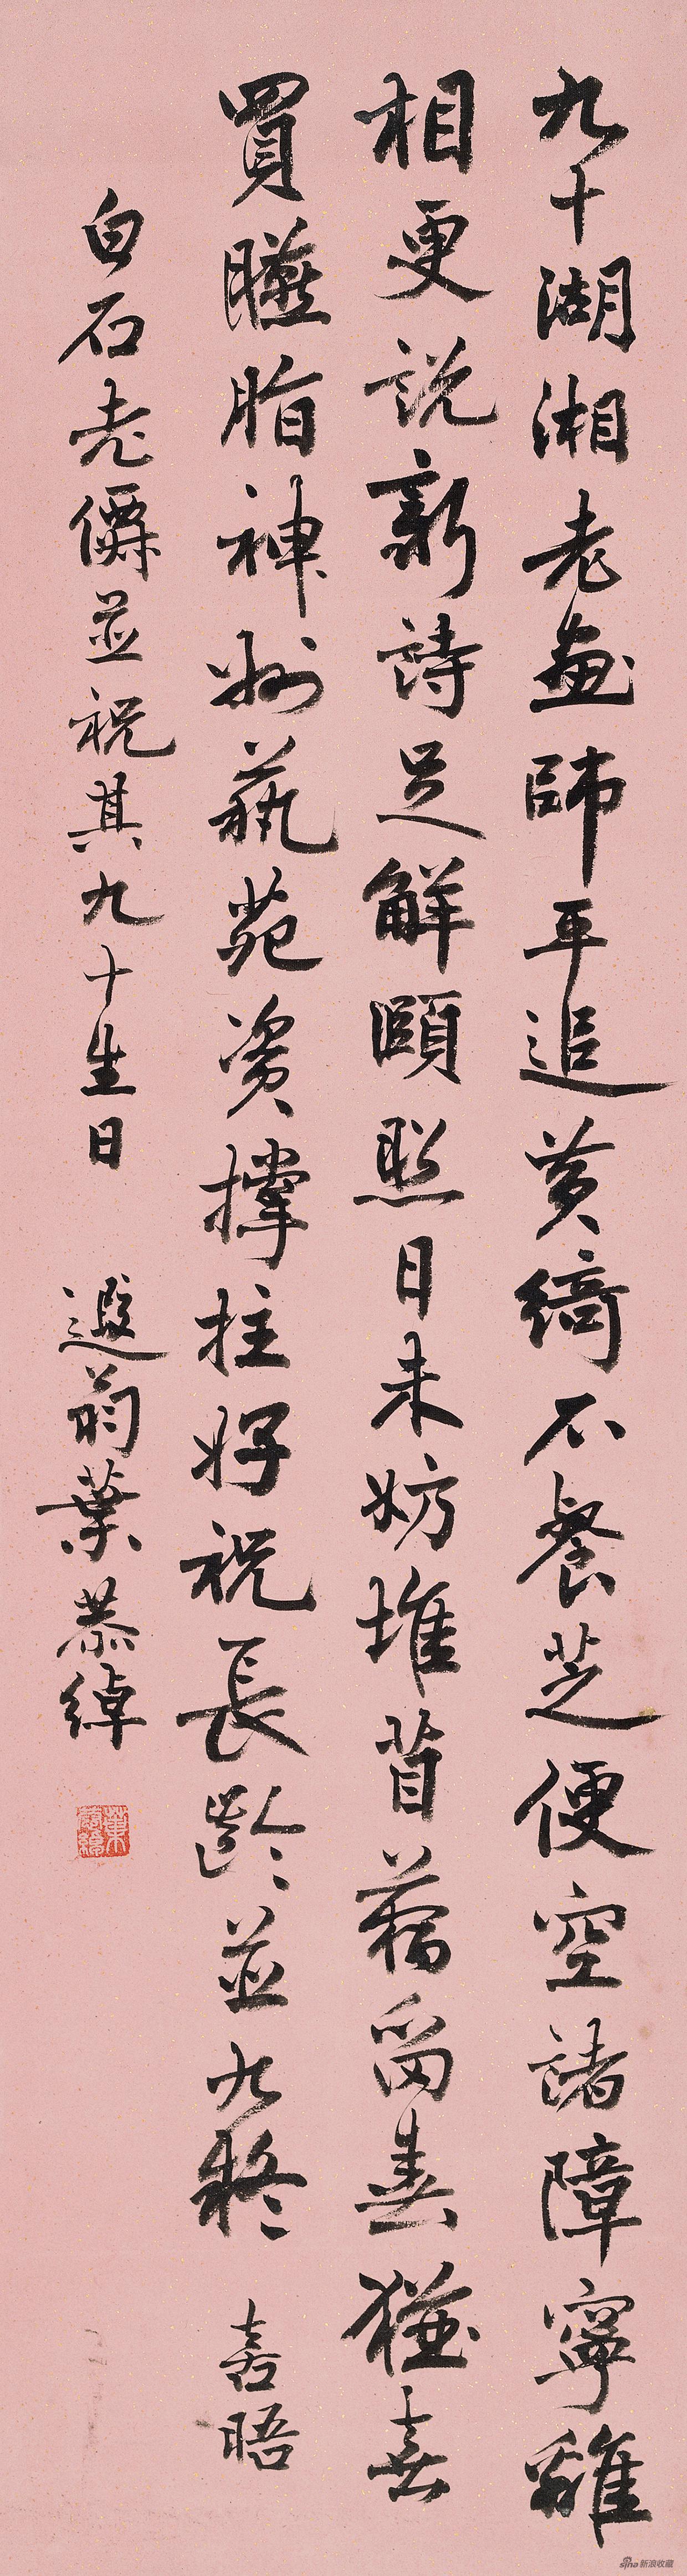 齐老九十庆 叶恭绰106cm×28cm 1950年 纸本水墨 北京画院藏